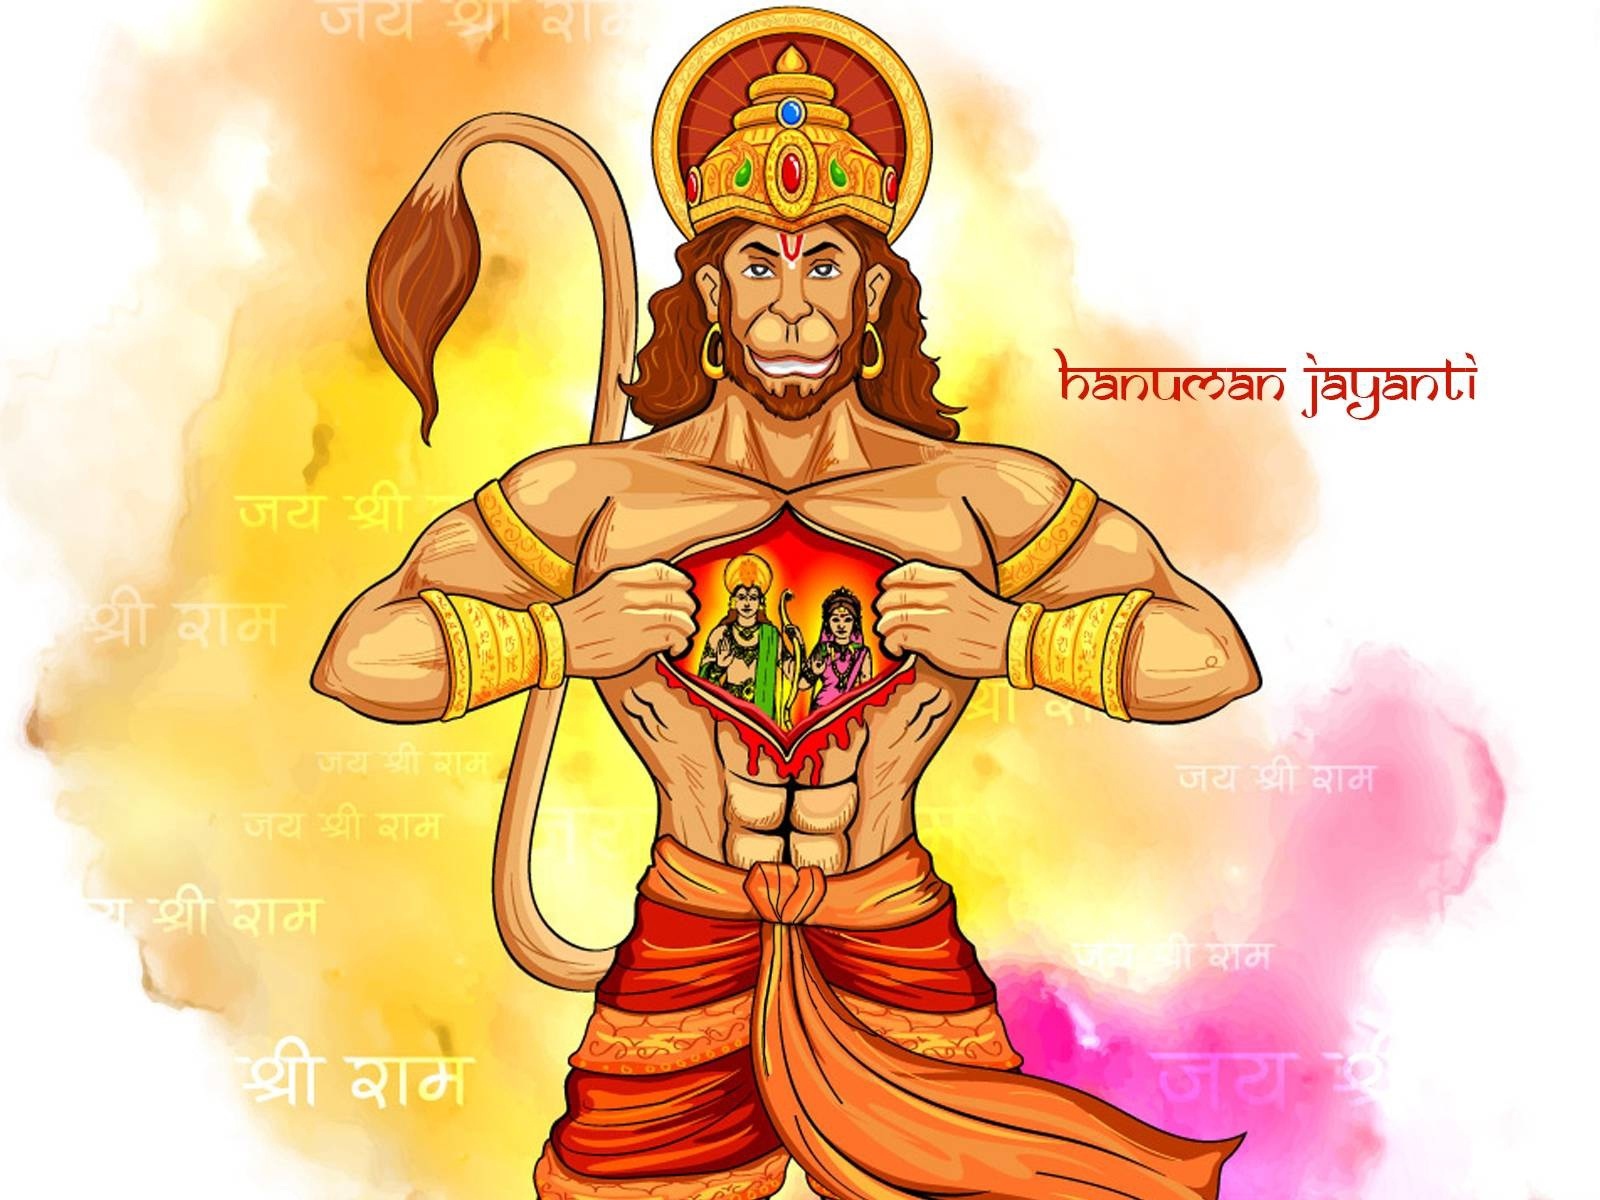 Hanuman Ji With Ram And Sita In Heart